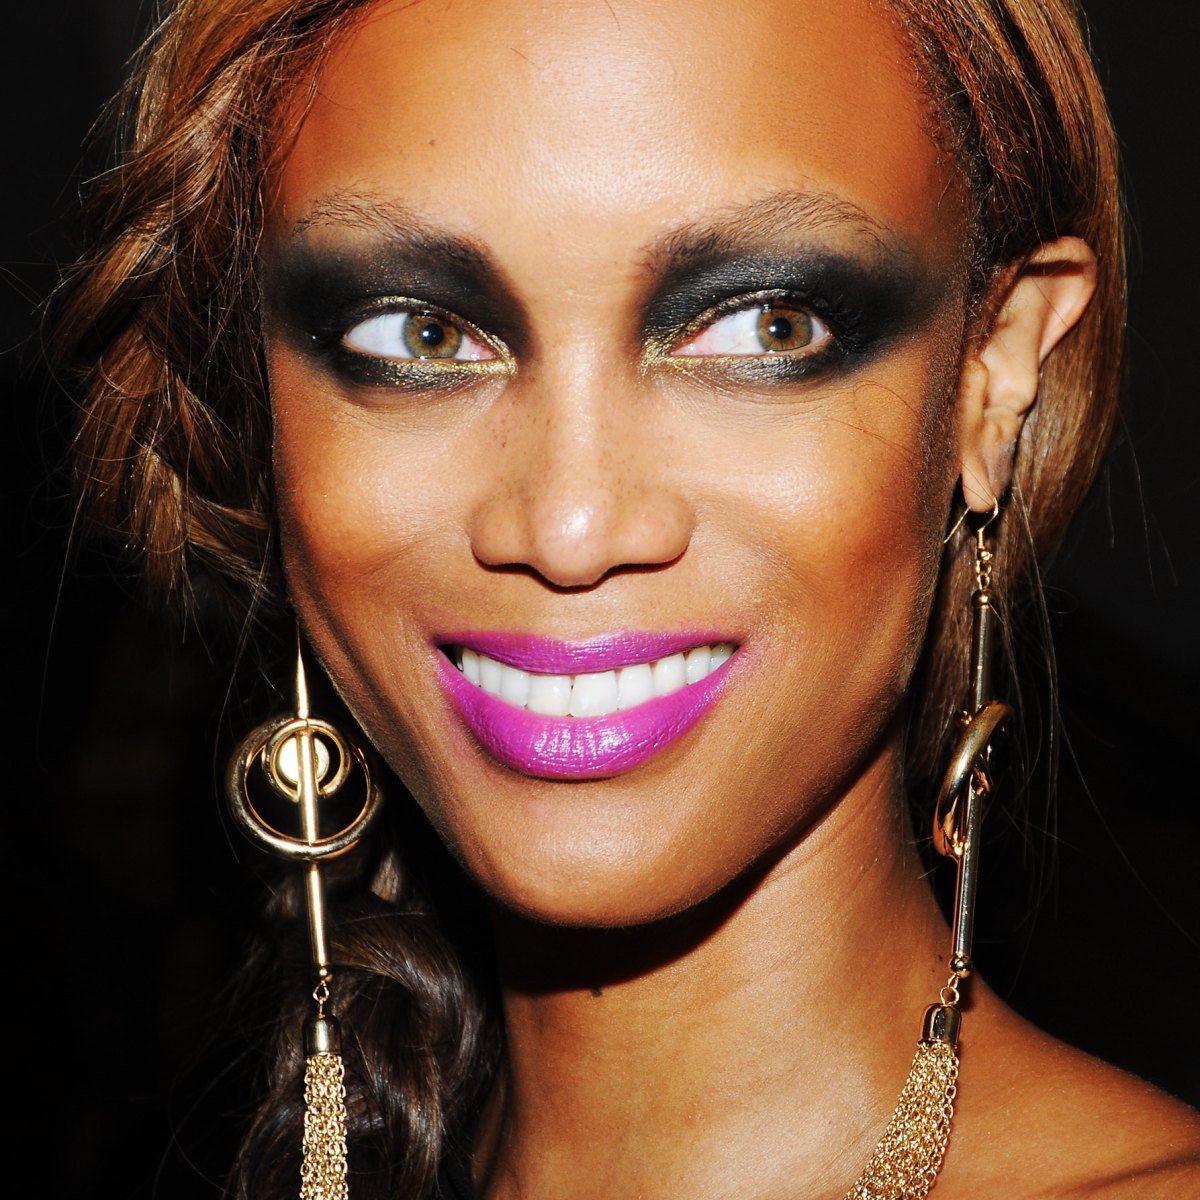 Ynkelig stil Forlænge Celebrity Makeup Fails: Because Even the Stars Get It Wrong